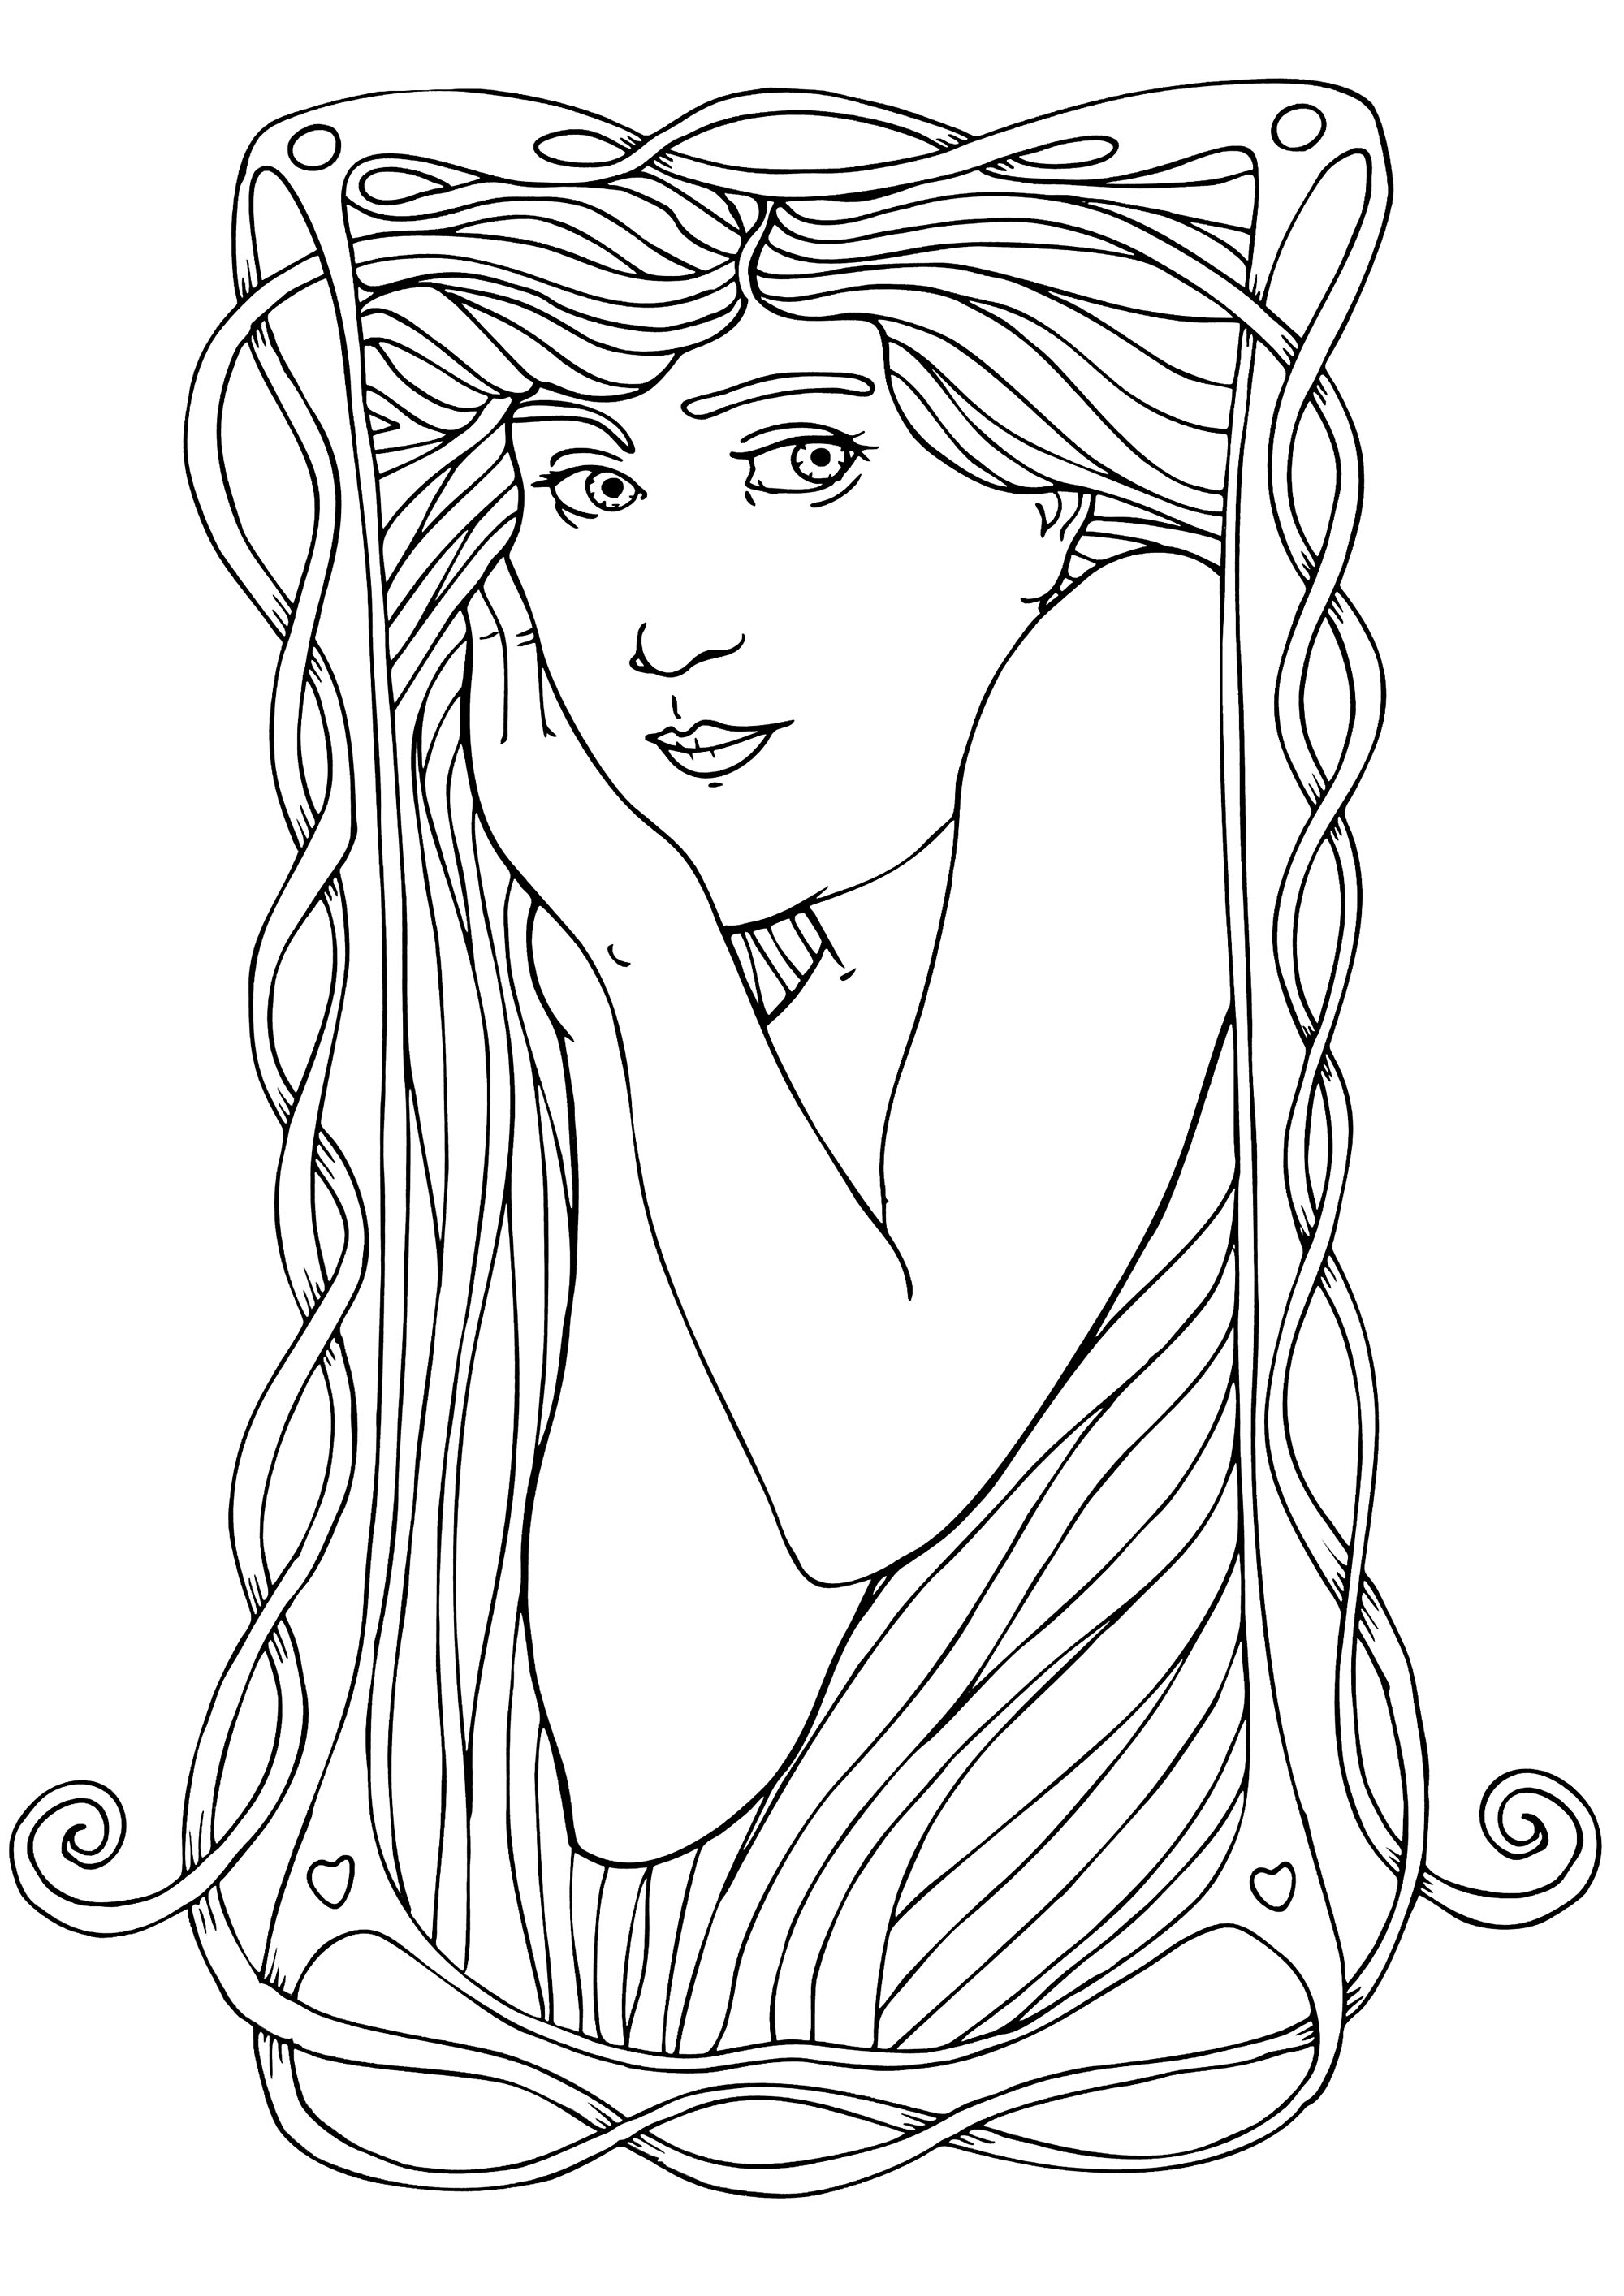 Representación de una mujer de estilo Art Nouveau, reproduciendo el estilo de Alfons Mucha, con pocos detalles